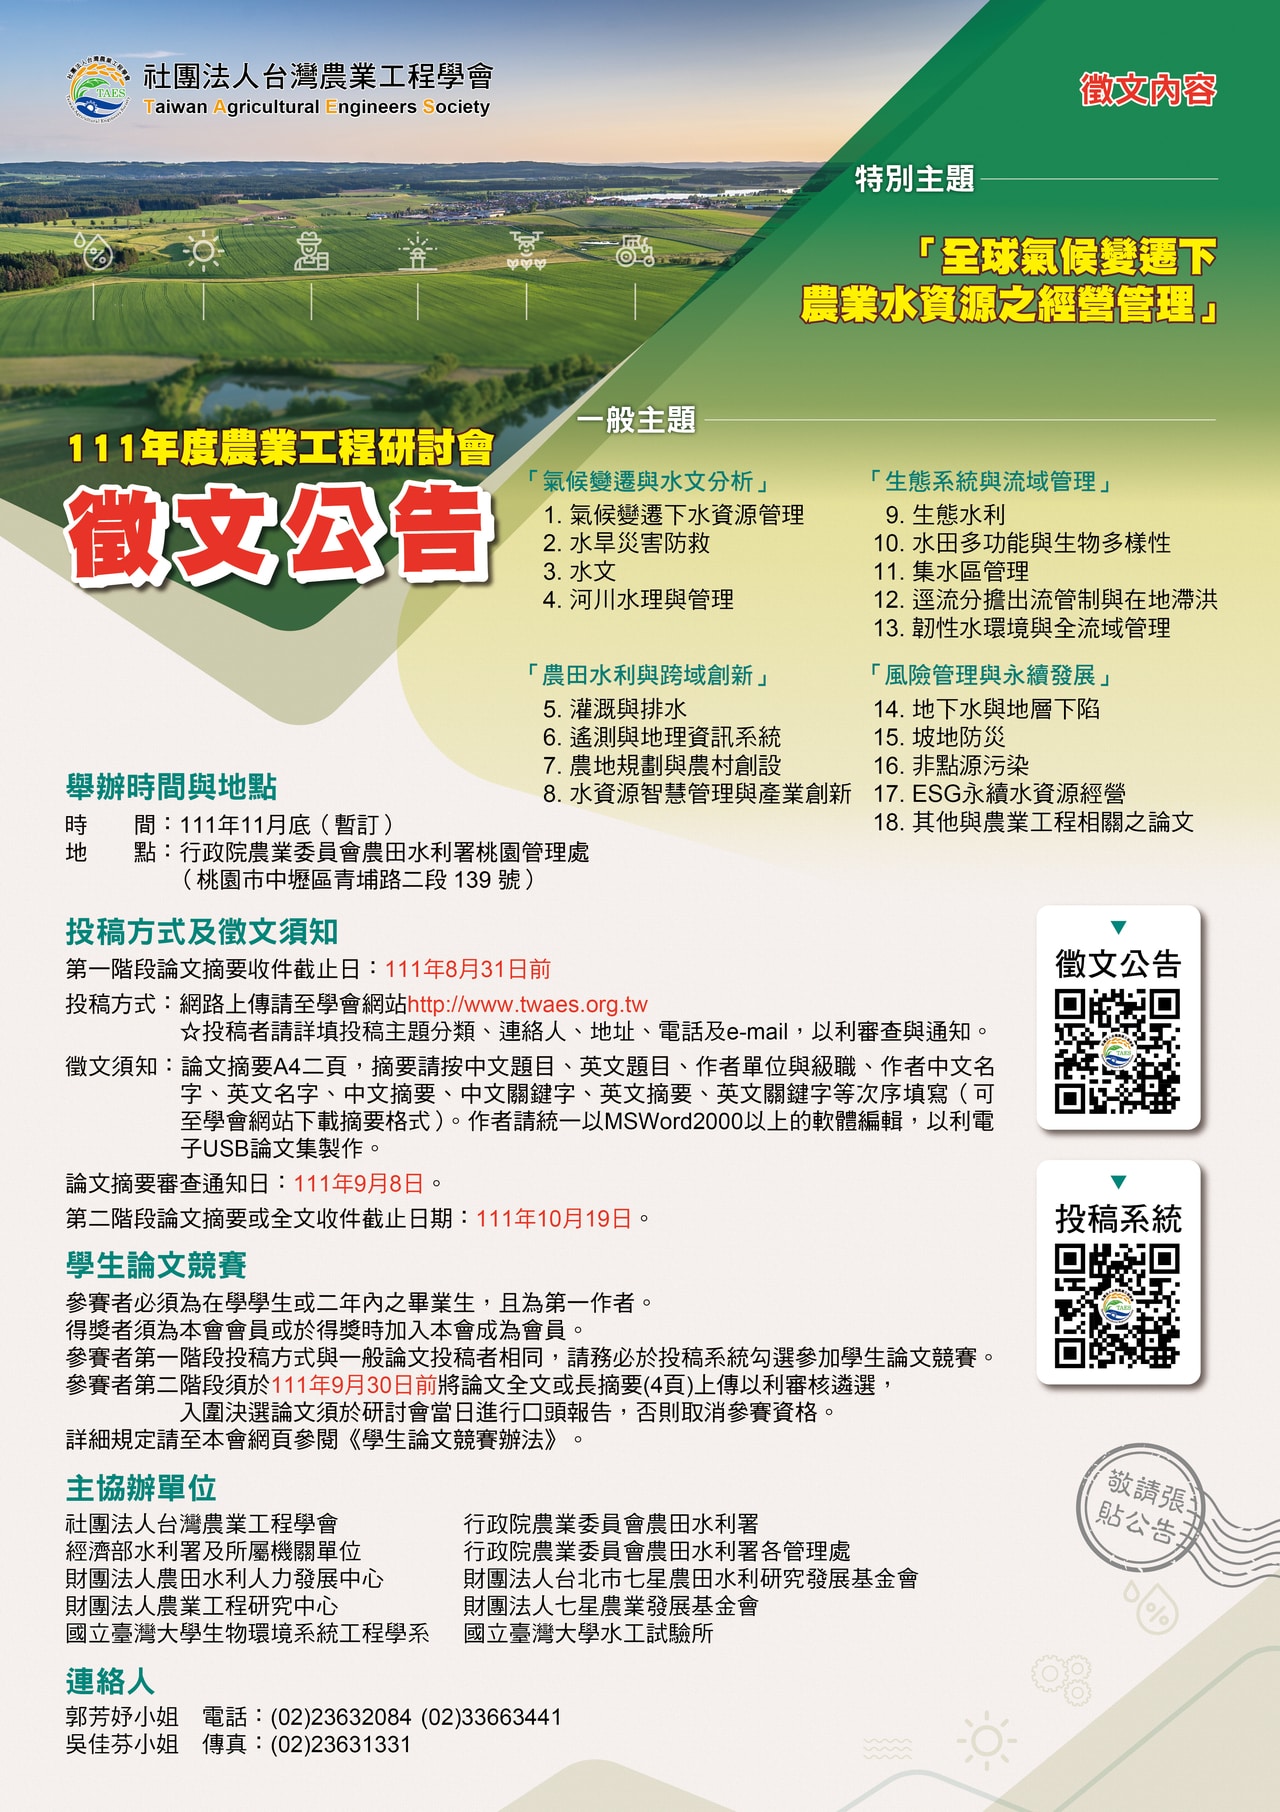 111 年度台灣農業工程學會徵文海報